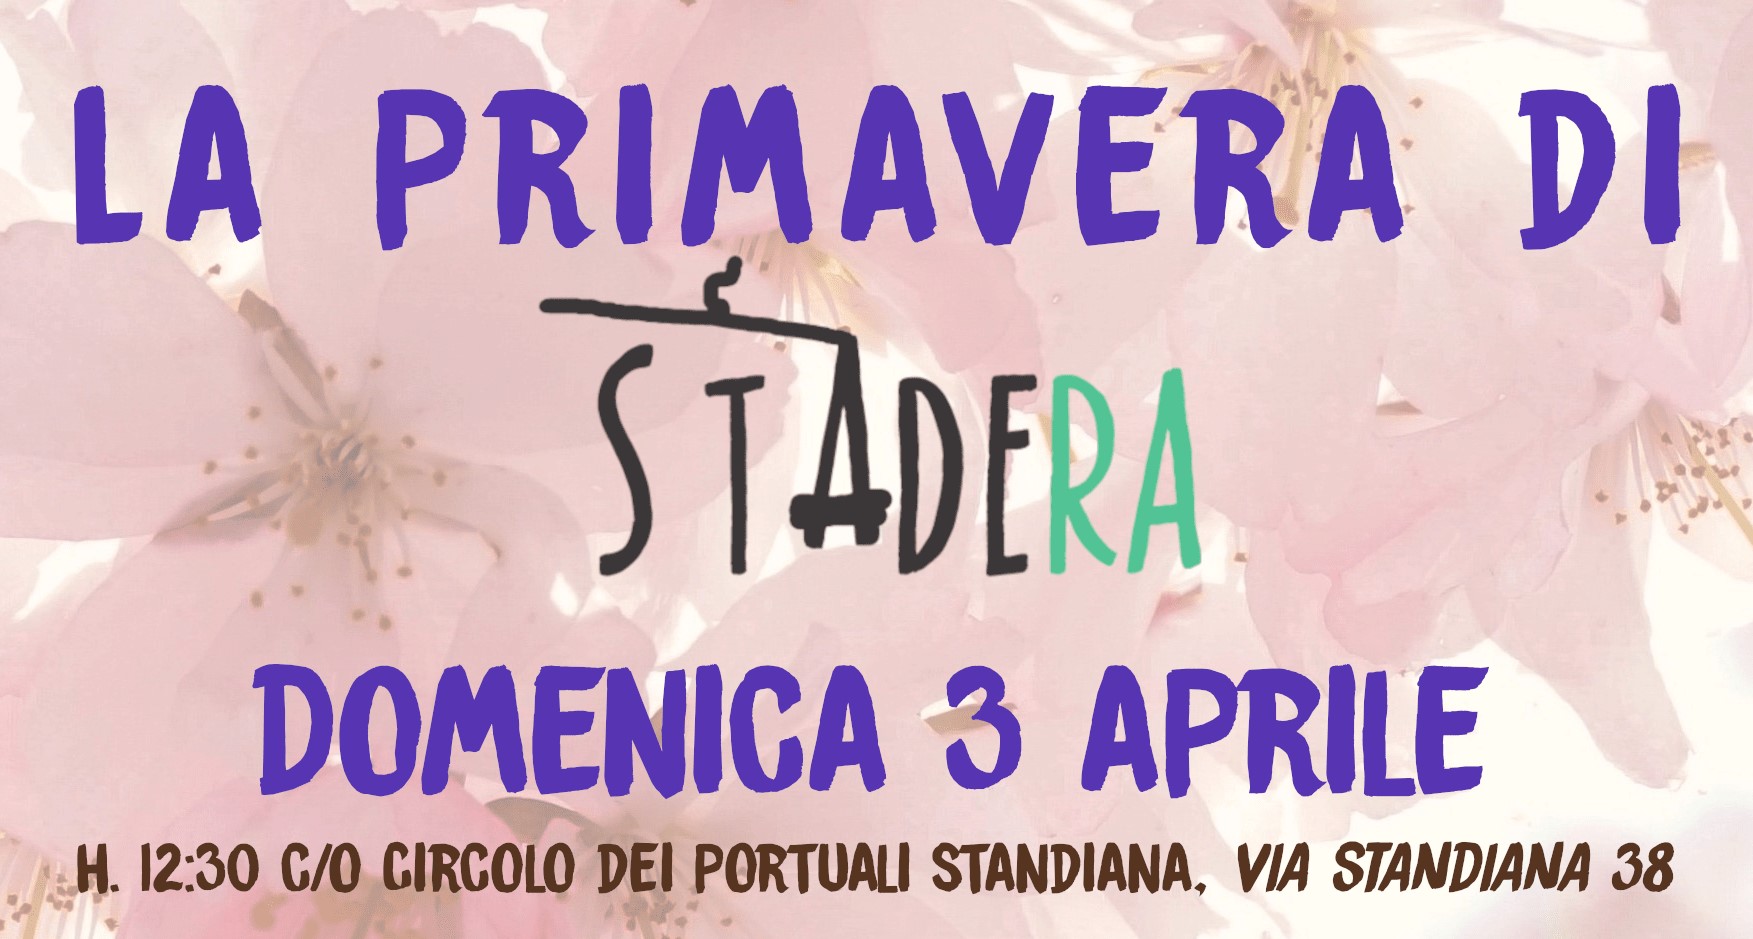 La-Primavera-di-Stadera_03-04-2022